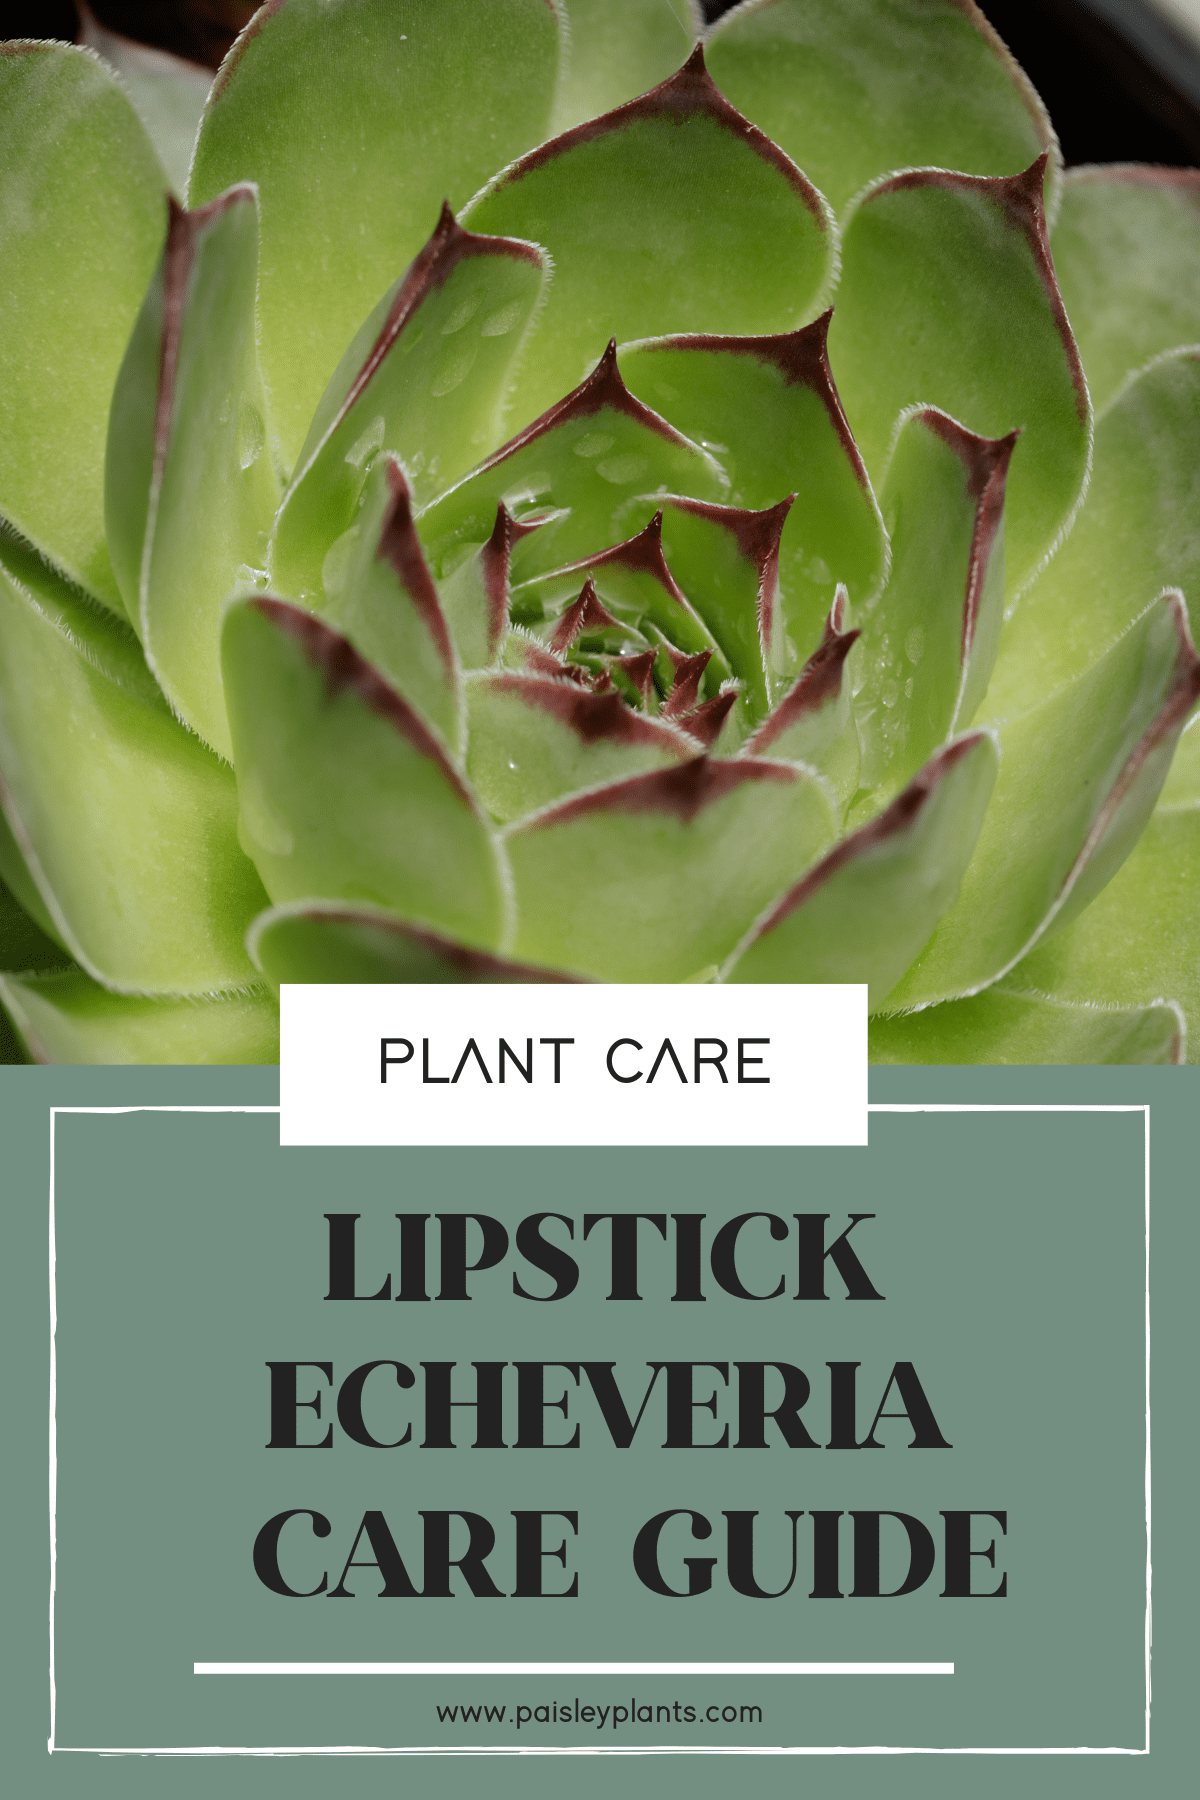 Lipstick Echeveria care